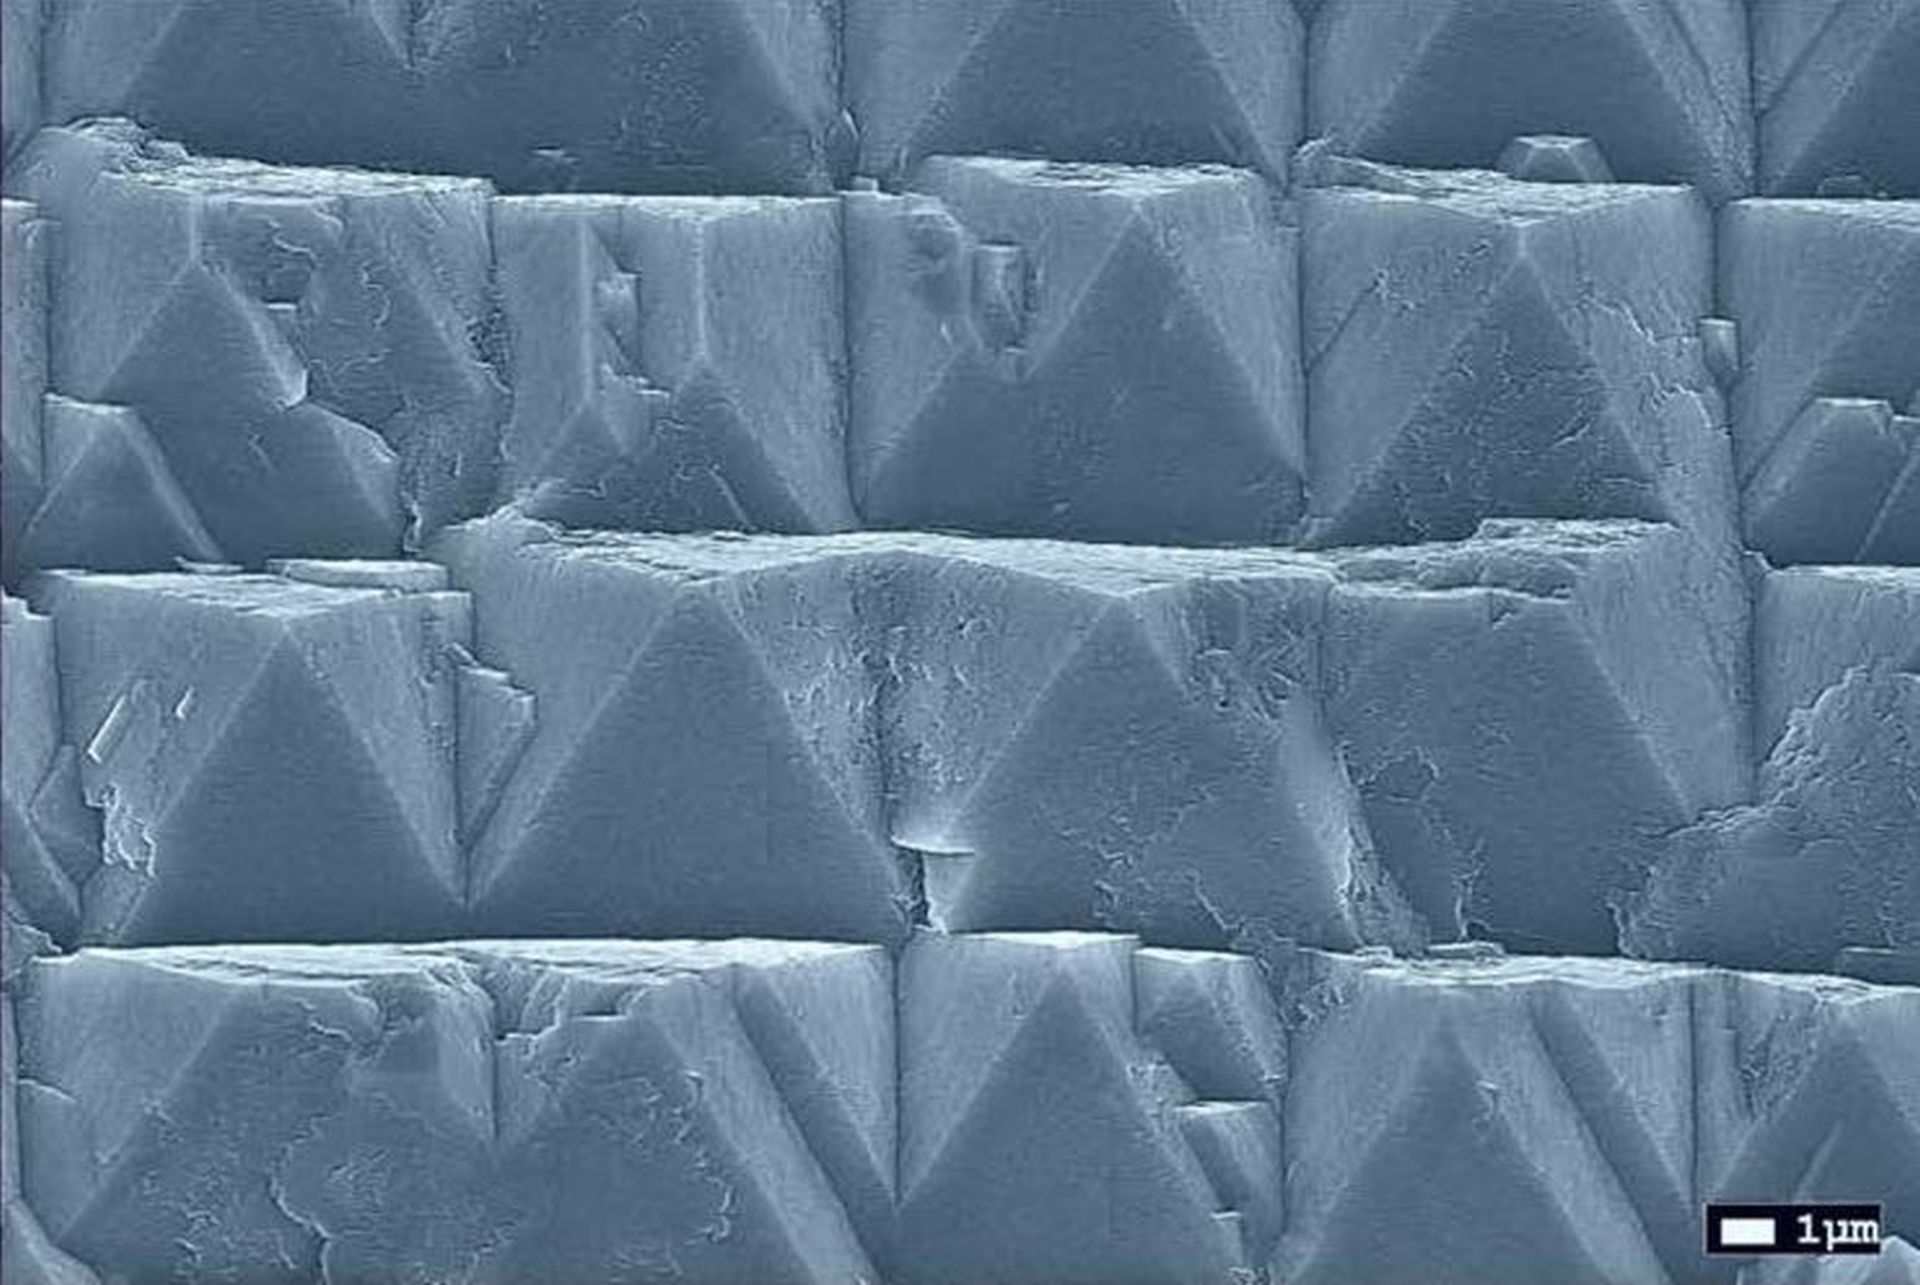 Elektronenmikroskopische Aufnahme einer frühen Wachstumsphase von Diamant auf einem Wafer